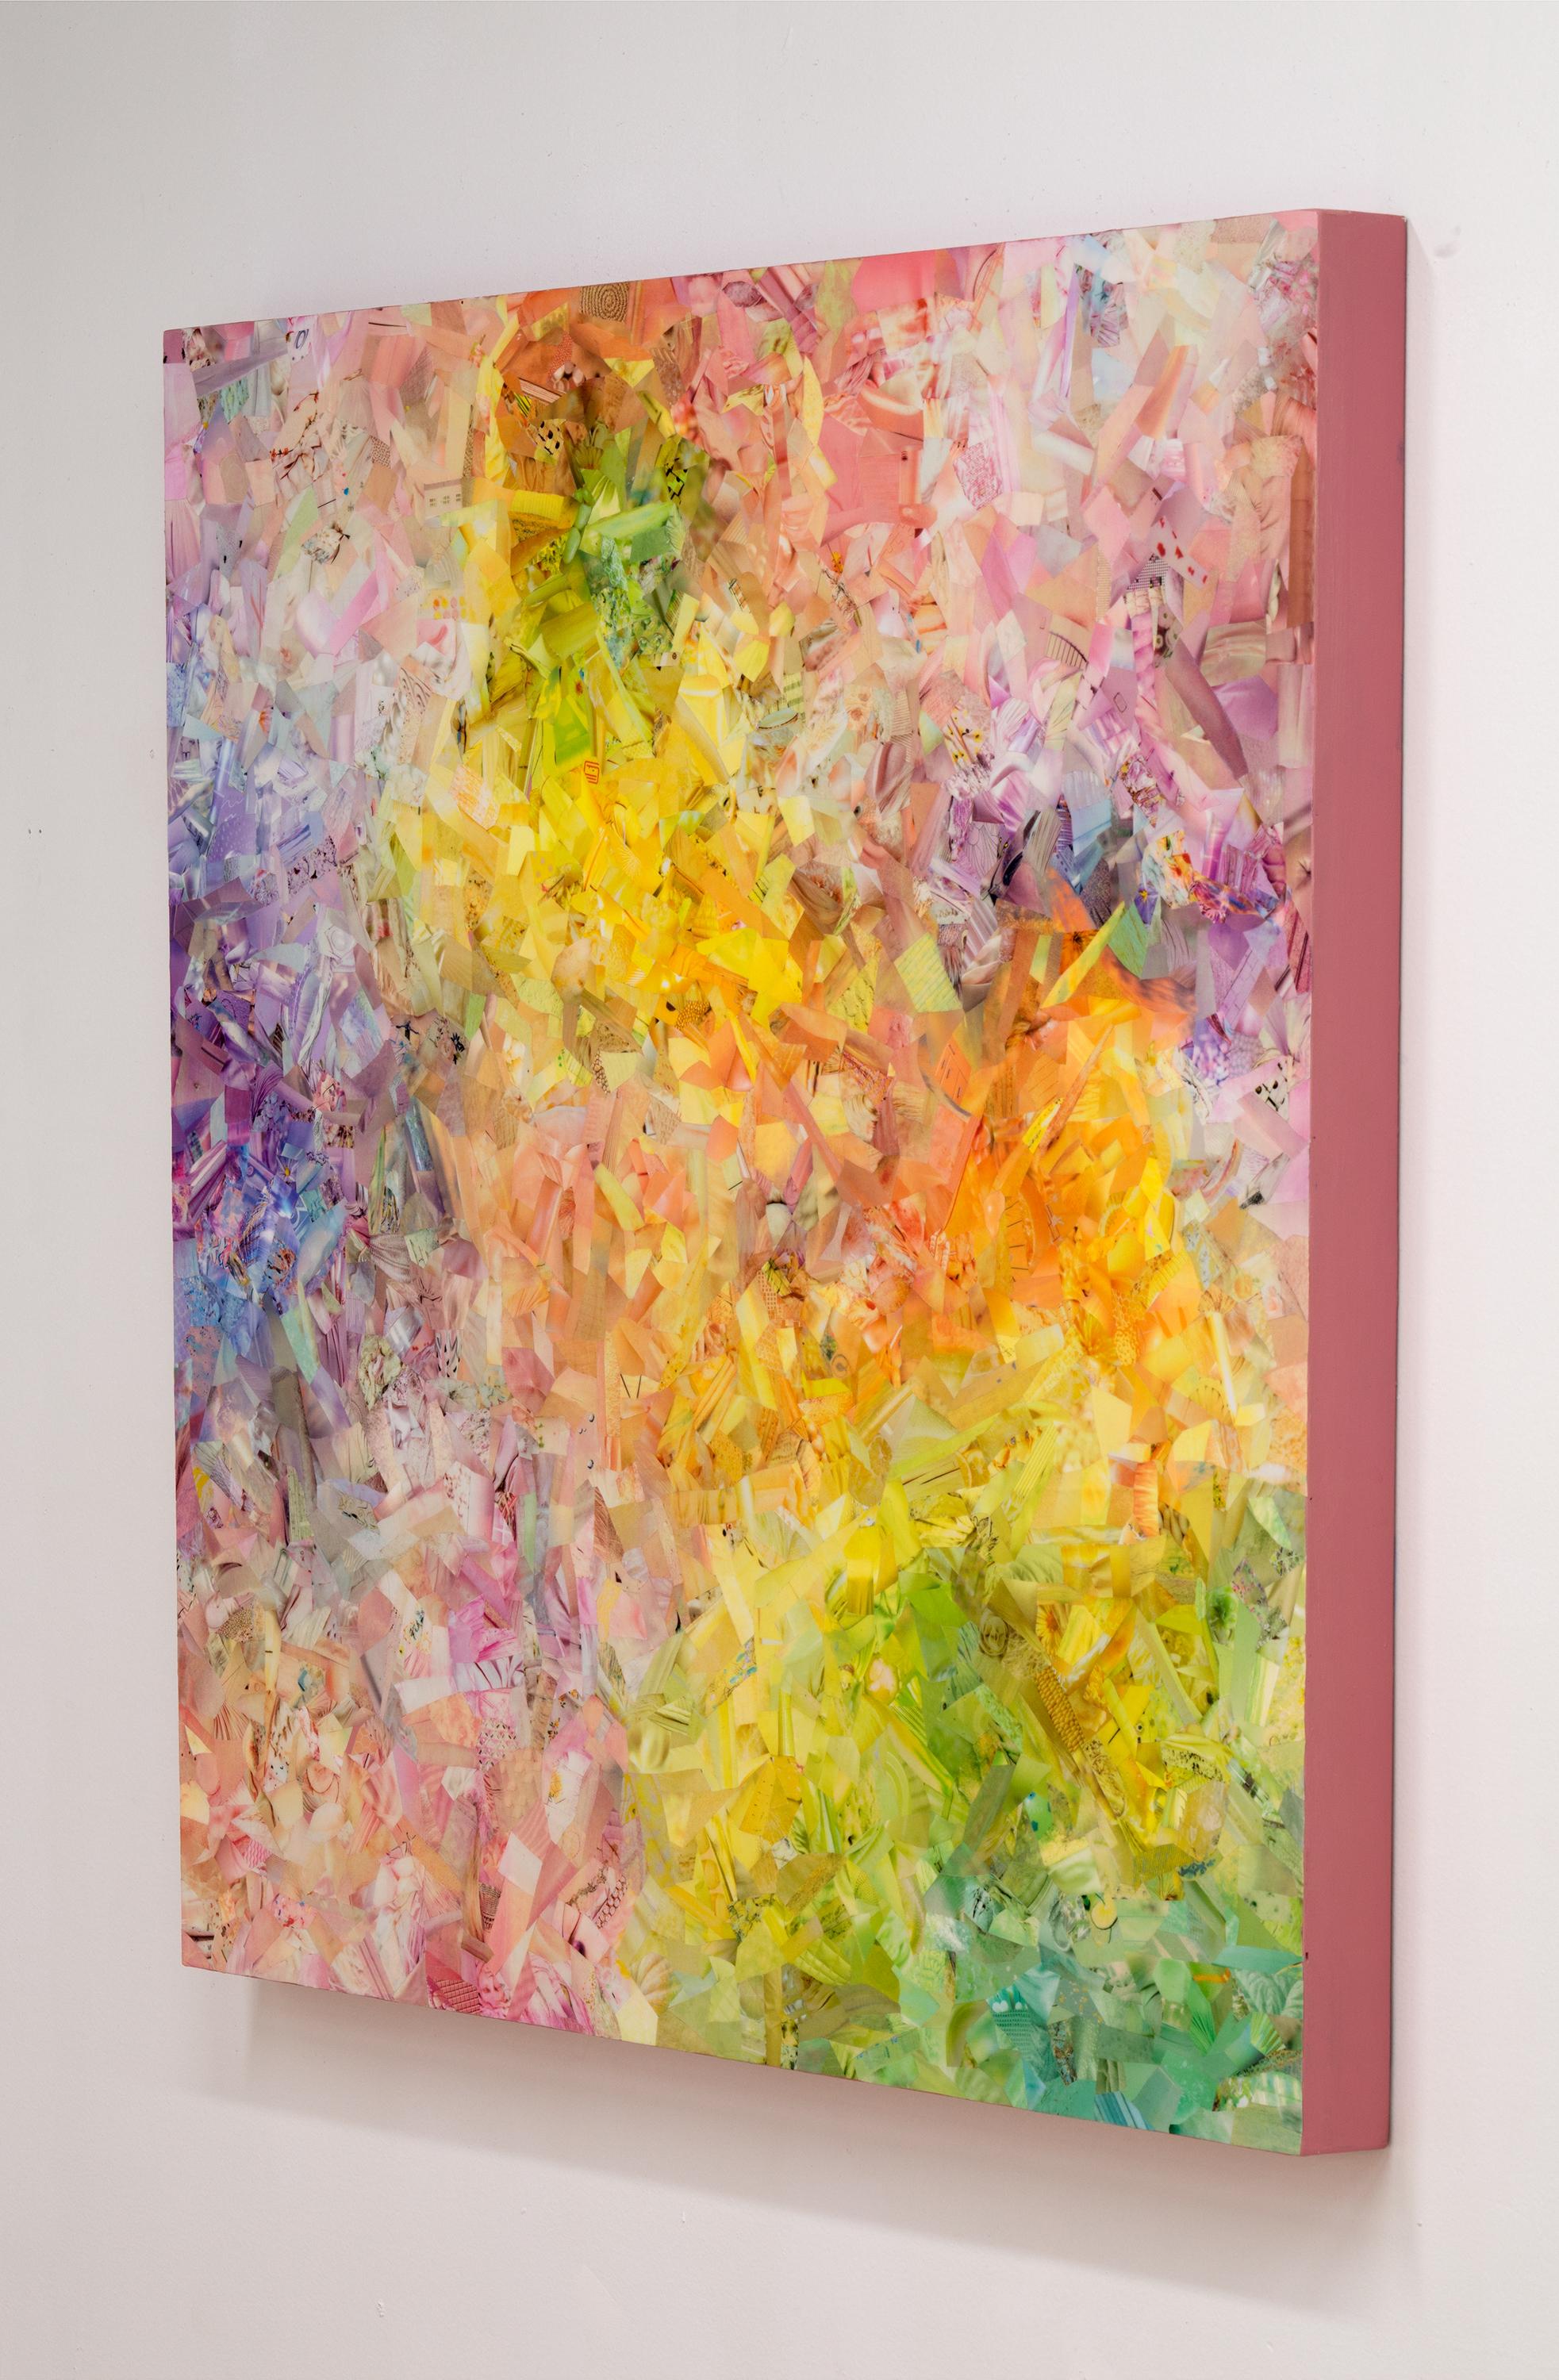 In TODDLER TANTRUM testet Sue Fox die meditativen Grenzen ihrer künstlerischen Arbeit aus. Intuitiv collagiert sie kleinere Stücke in leuchtenden Pink-, Lila- und Gelbtönen und drückt damit die durch und durch ungeordnete, wutentbrannte Natur des